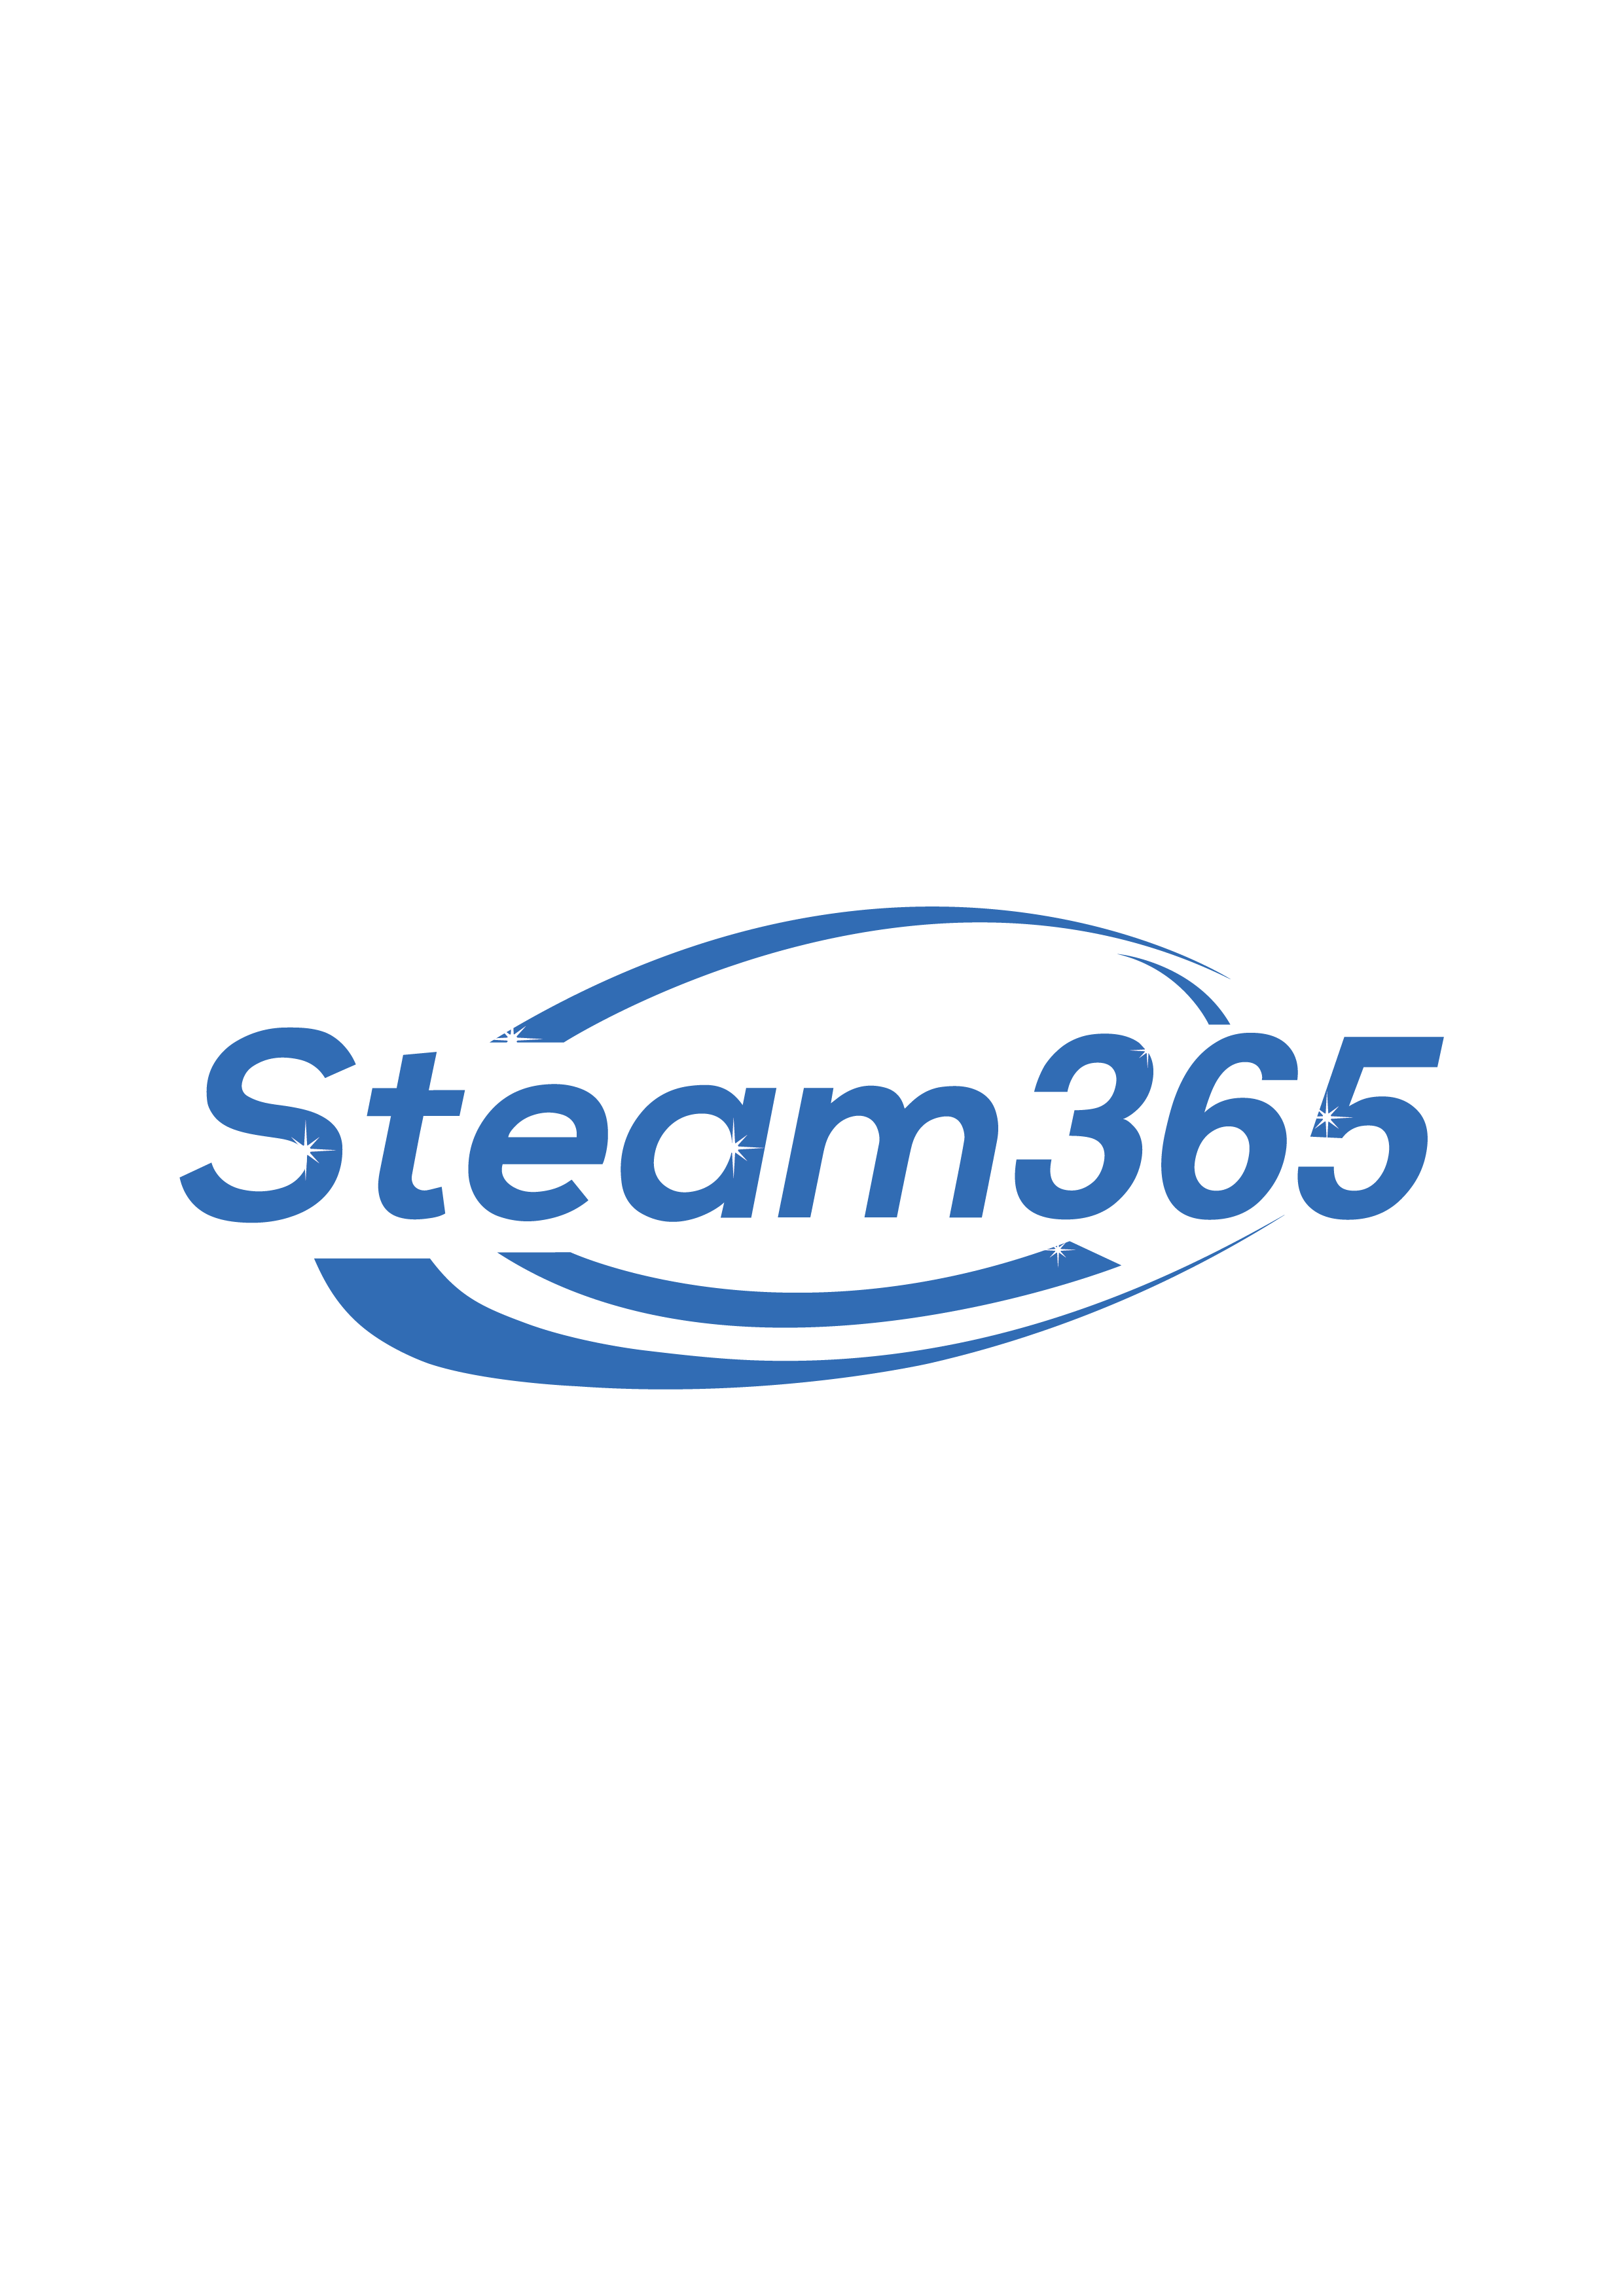 Steam365